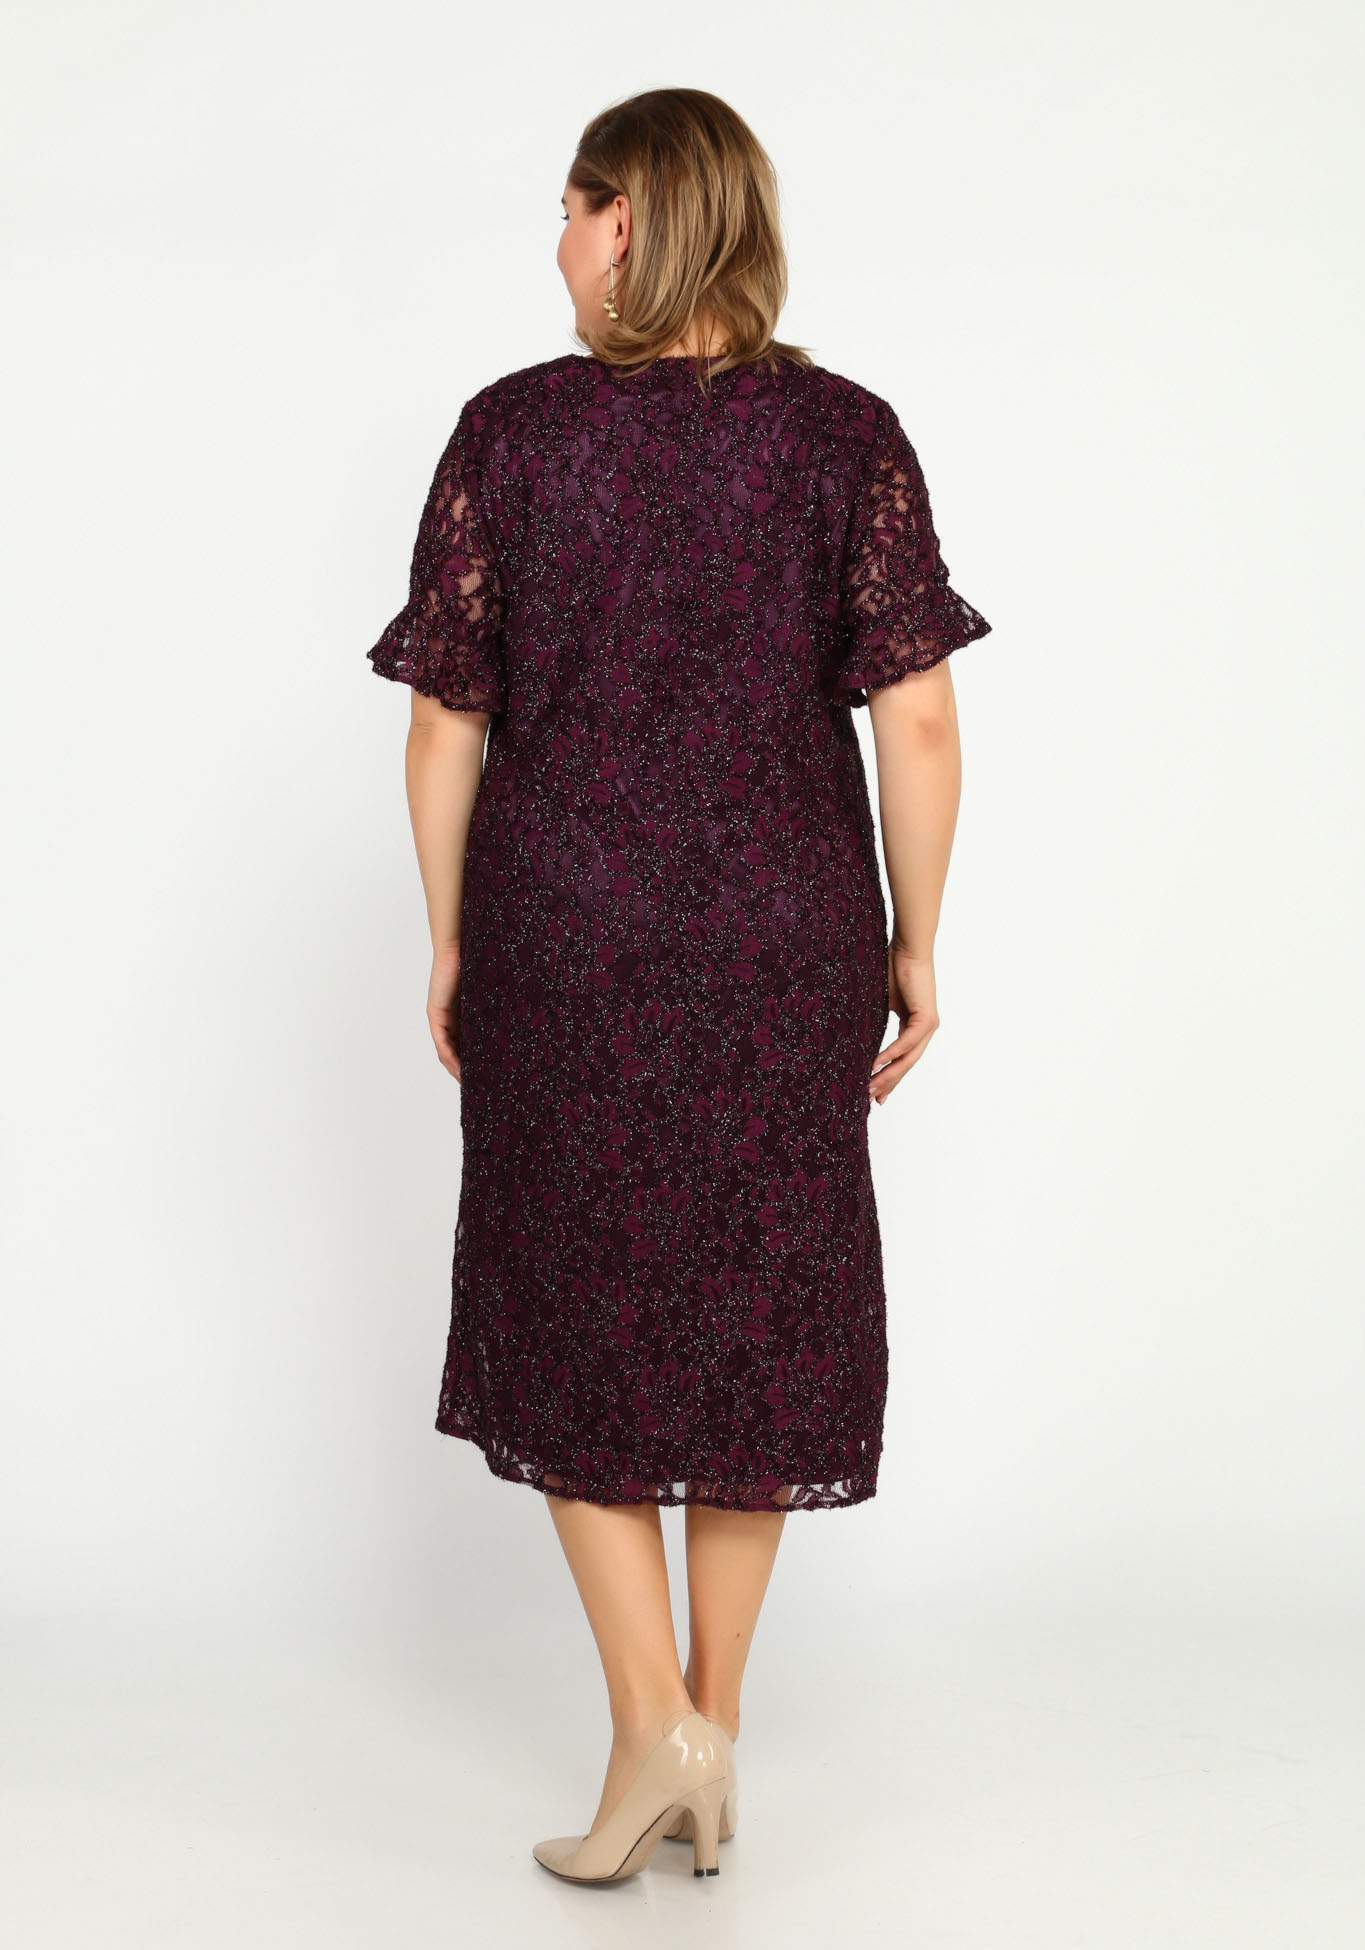 Платье с блеском и узором Bel Fiore, размер 48, цвет баклажановый - фото 8